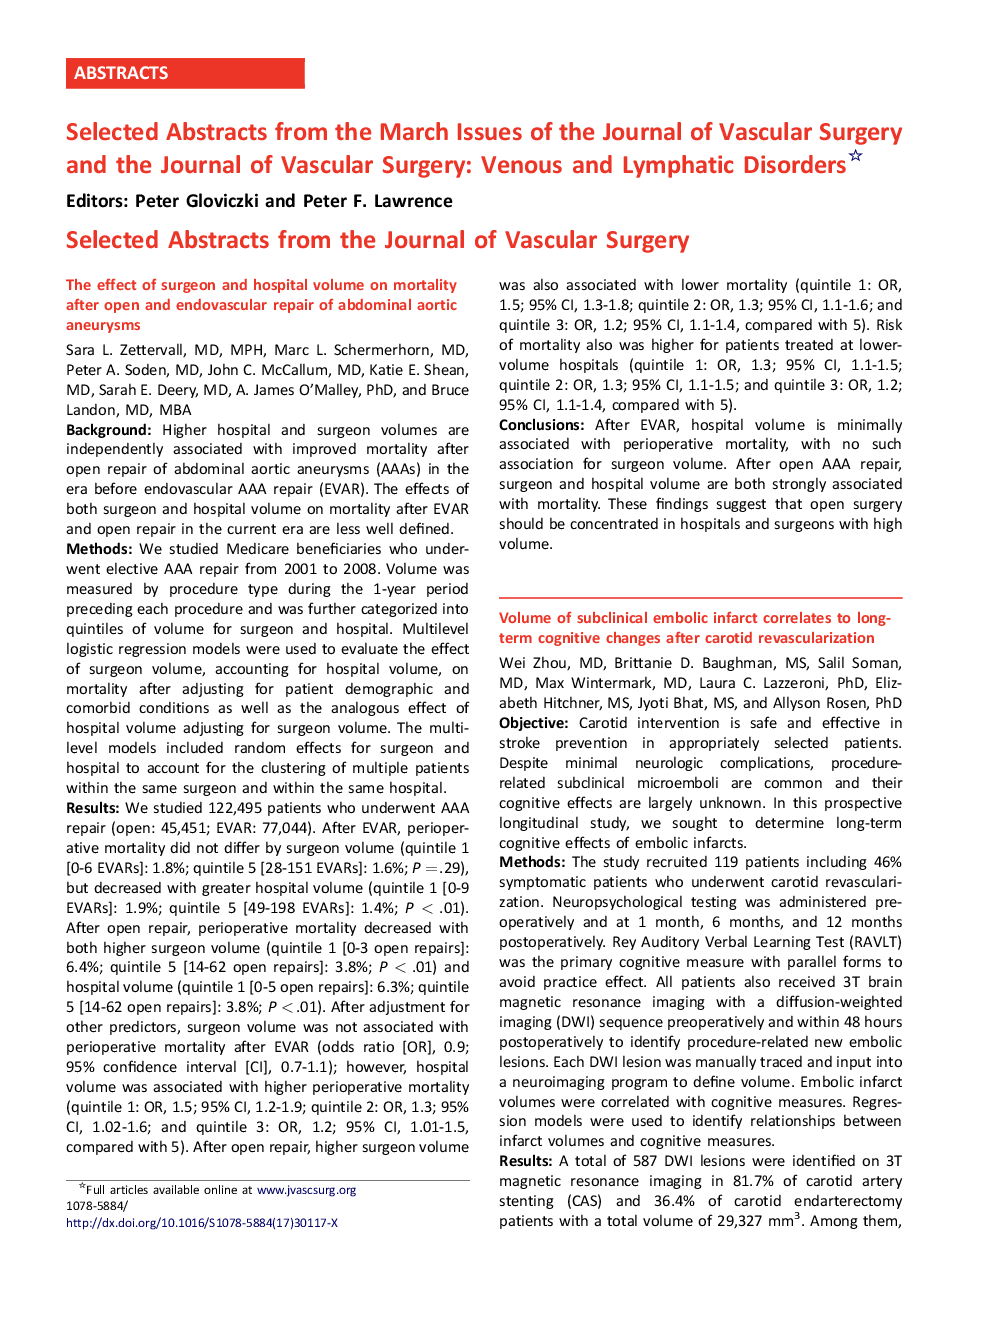 خلاصه های انتخاب شده از شماره های مارس مجله جراحی عروق و مجله جراحی عروق: اختلالات درماتولوژیک و لنفاوی 